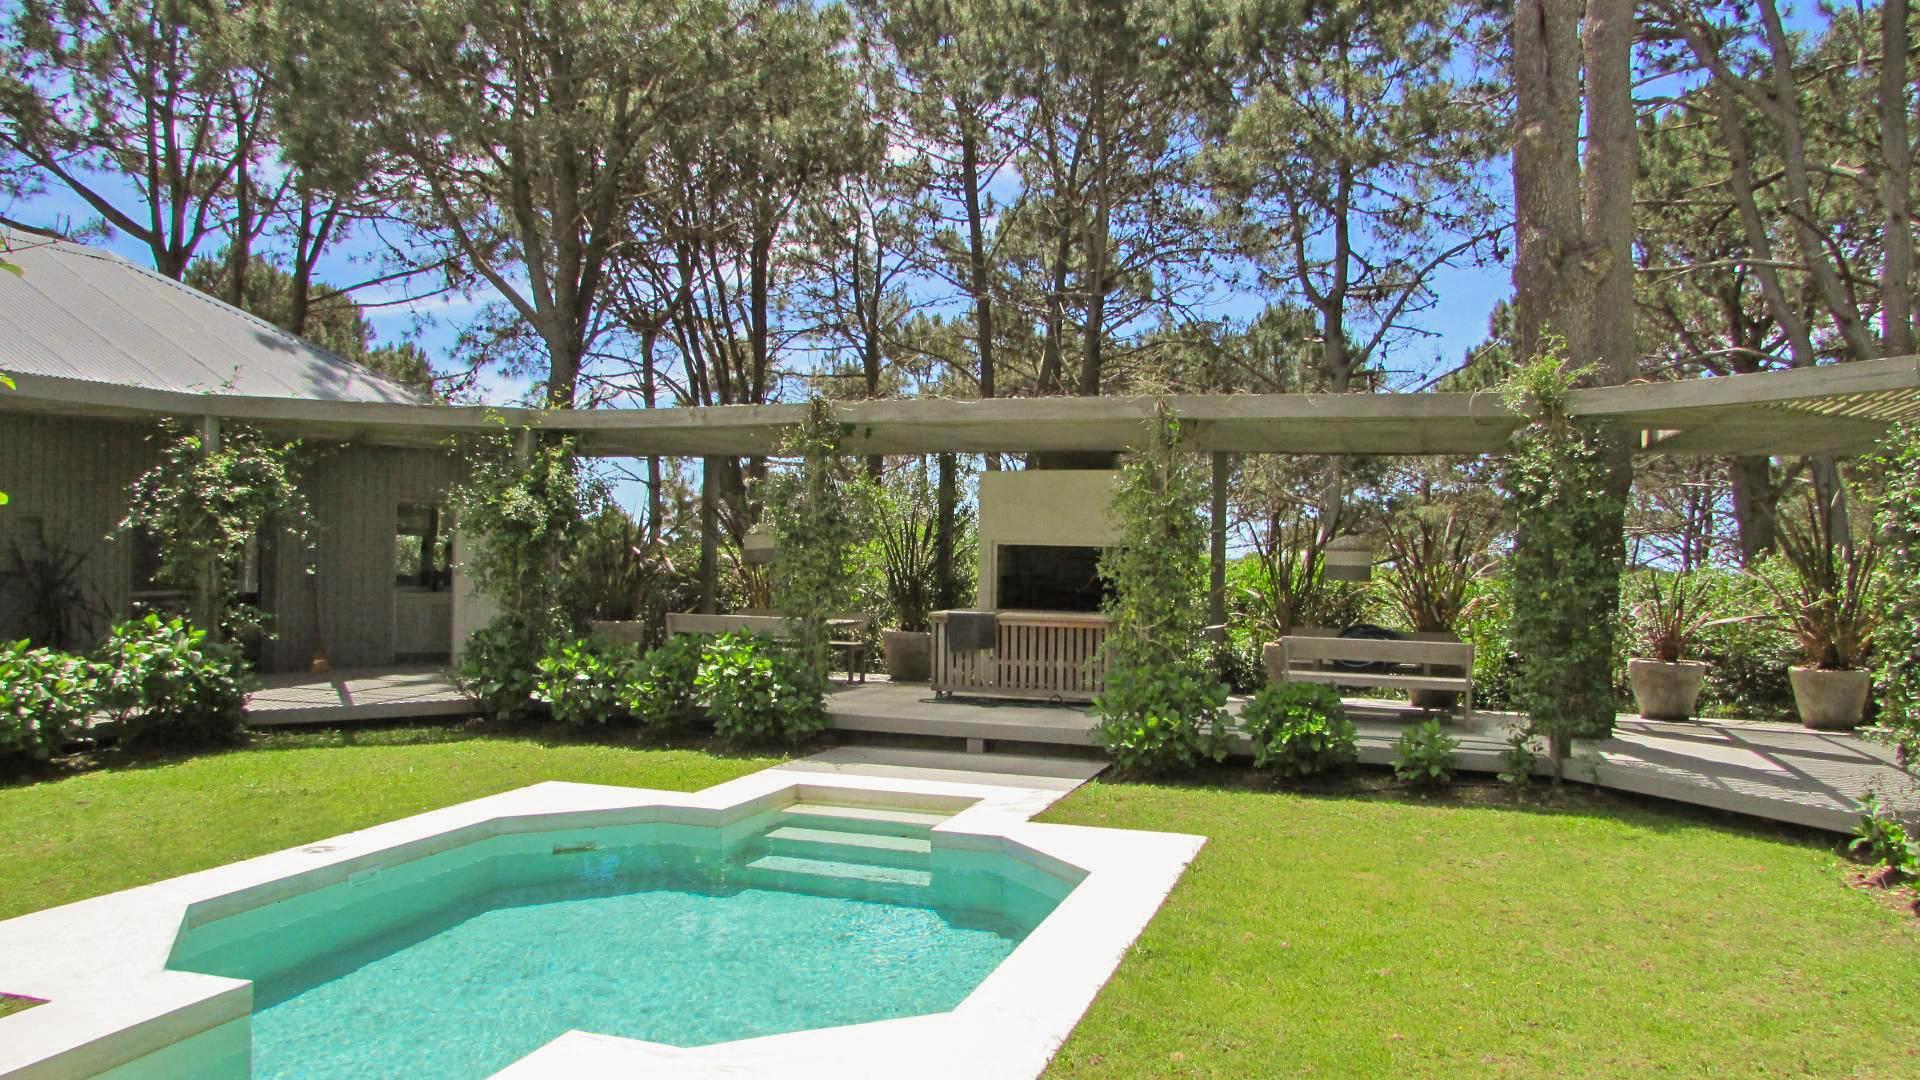 Gated Community Villa located in Jose Ignacio, Punta del Este, Uruguay, listed by Curiocity Villas.